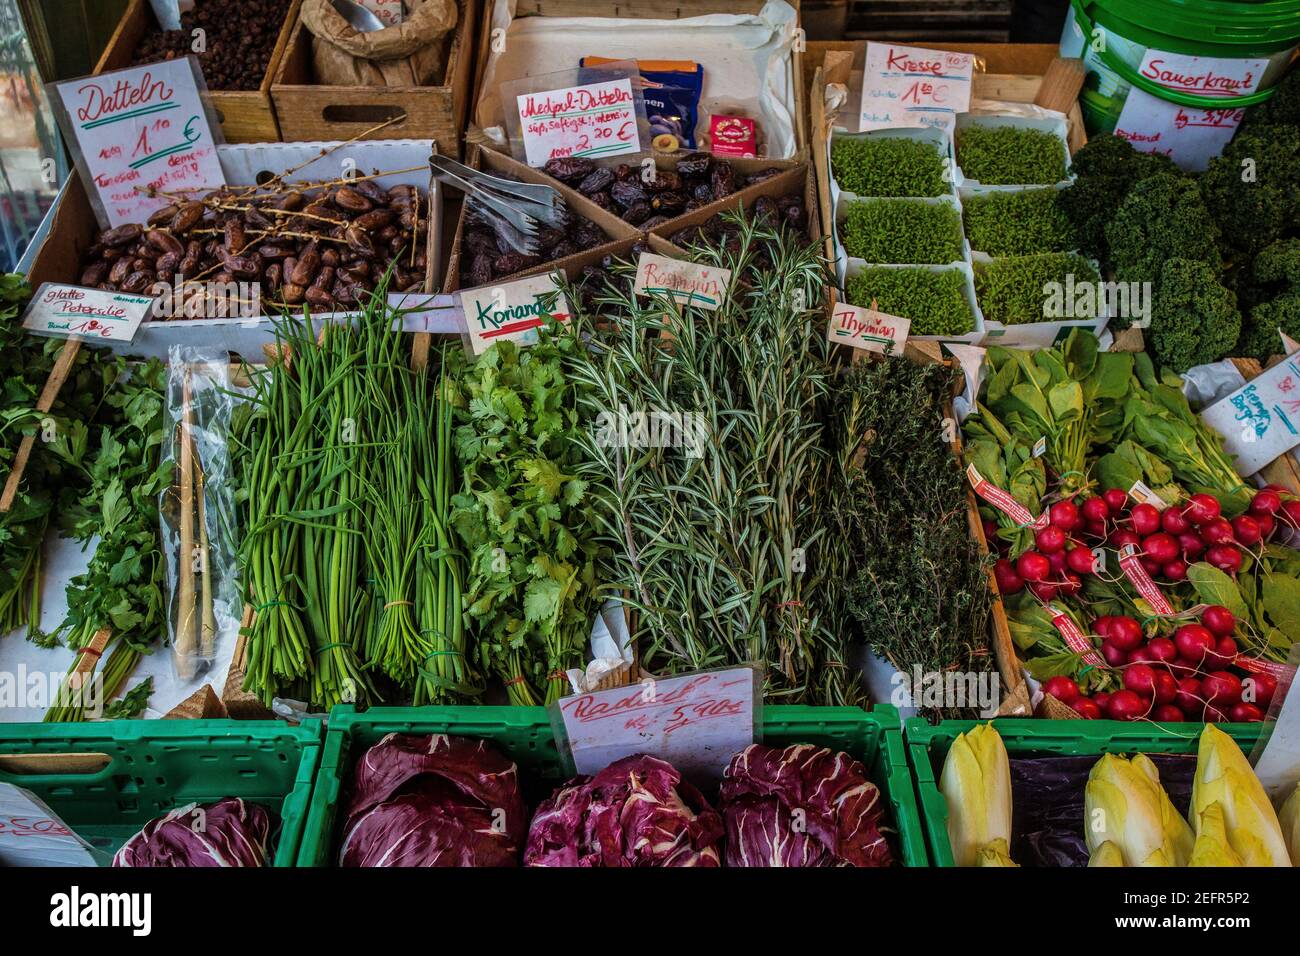 Viele Sorten vegetabel, Salat und frische Kräuter auf einem Markt, Findorff, Hansestadt Bremen, Deutschland. Stockfoto